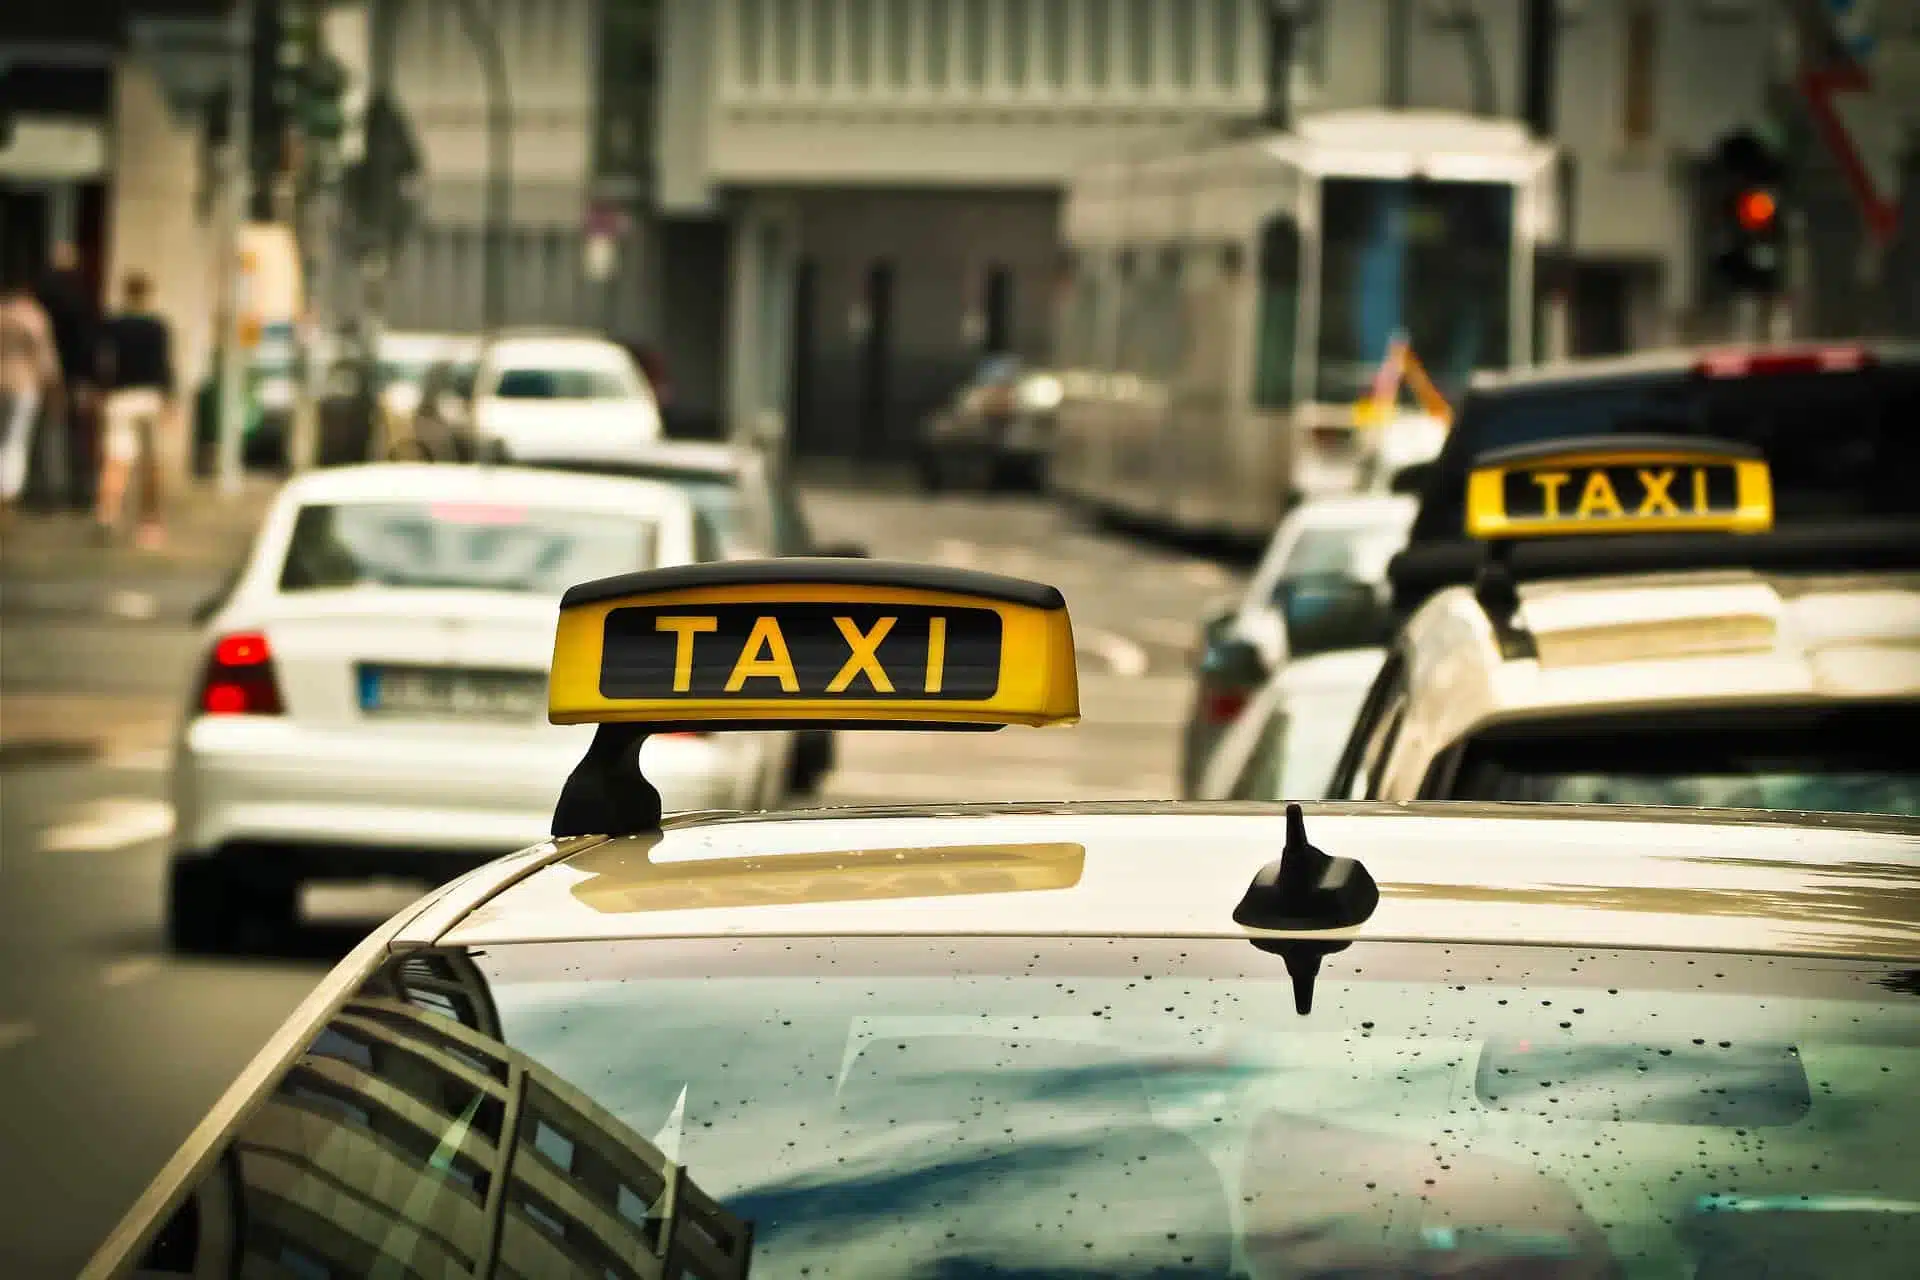 Comment appeler un taxi g7 ?